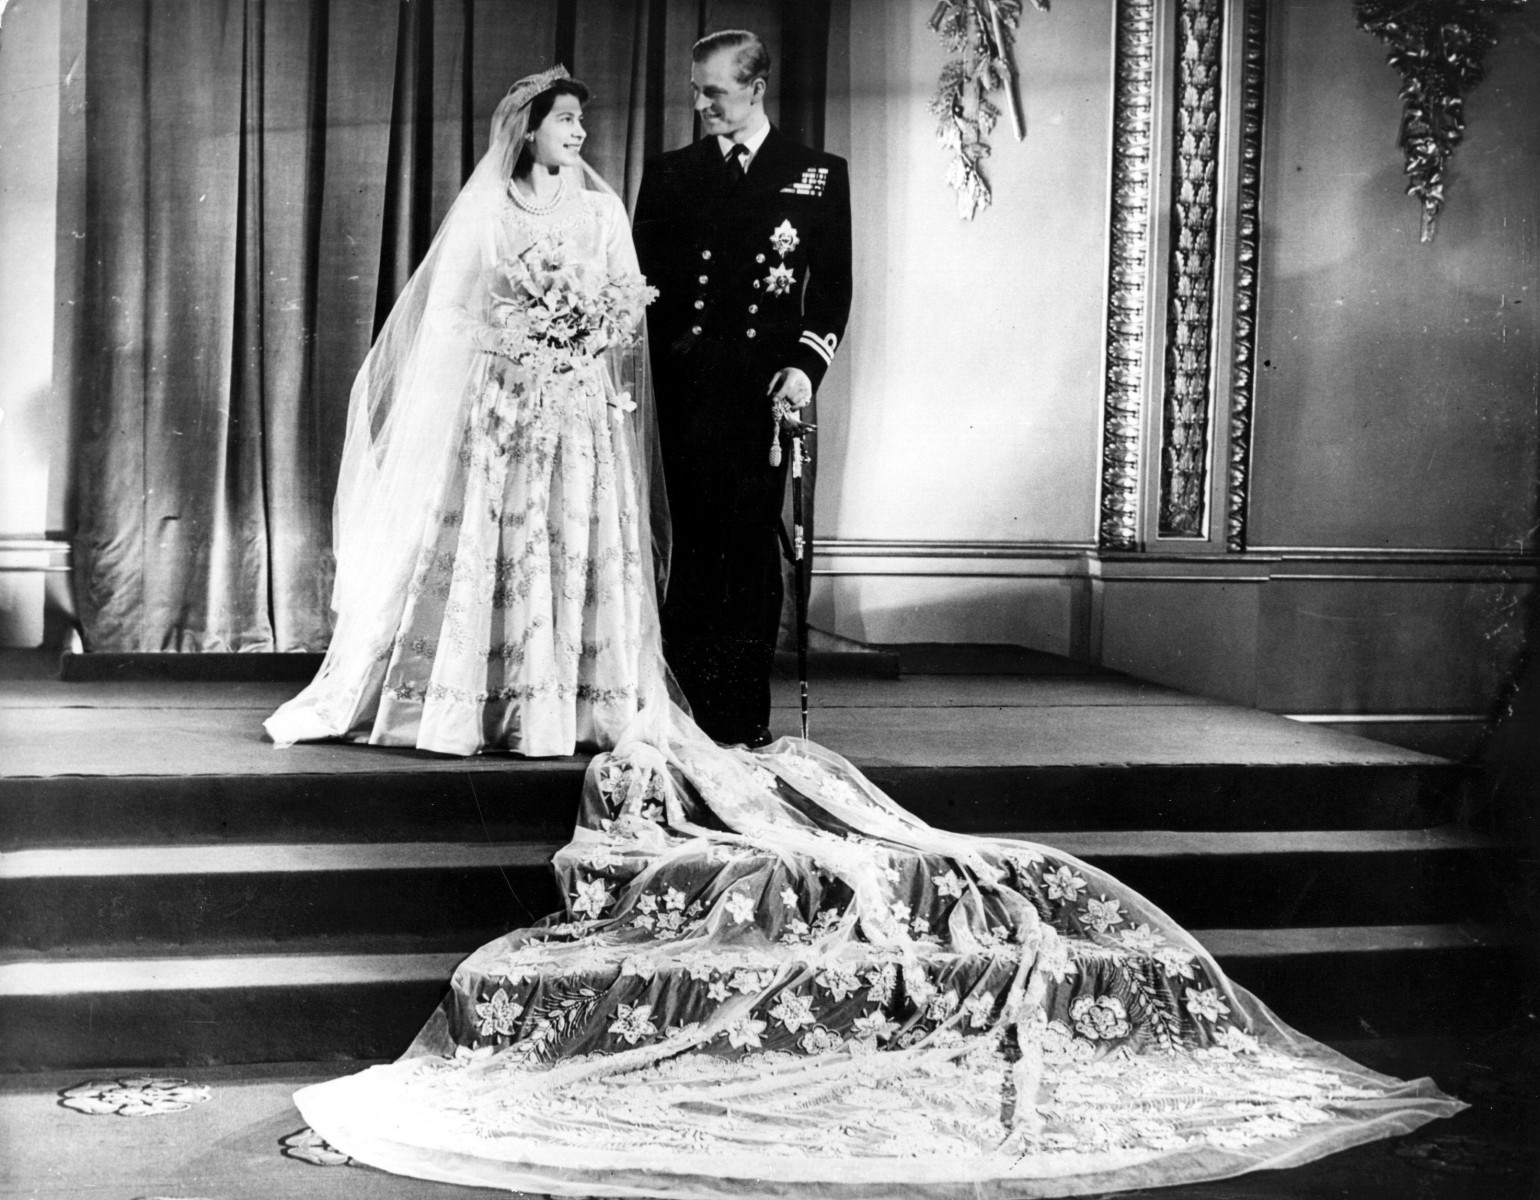 Elizabeth II married Prince Philip on November 20, 1947